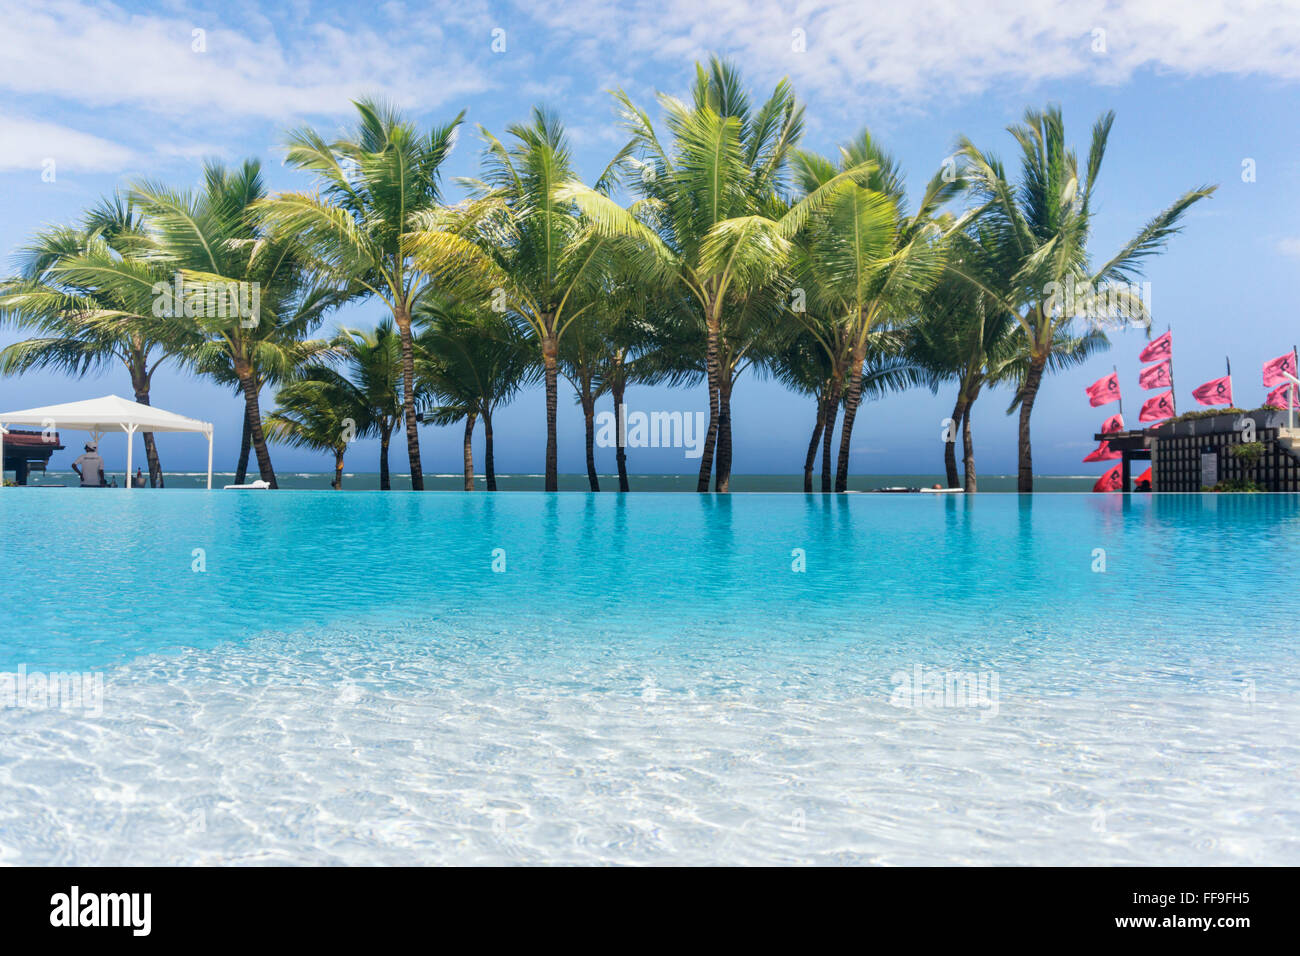 Piscine, palmiers, Resort, Cabarete, République Dominicaine Banque D'Images